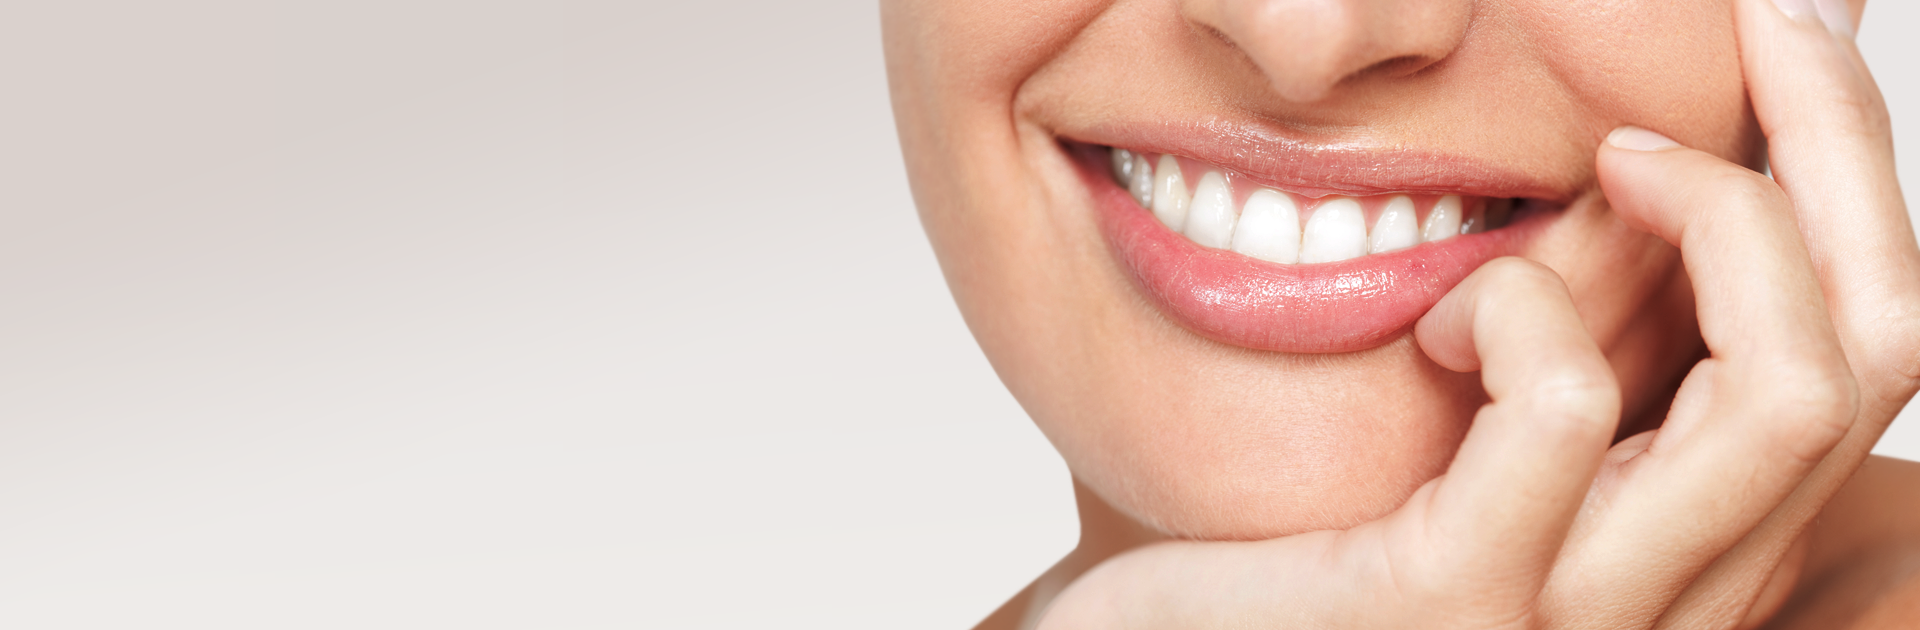 Periodontitis and gum treatment